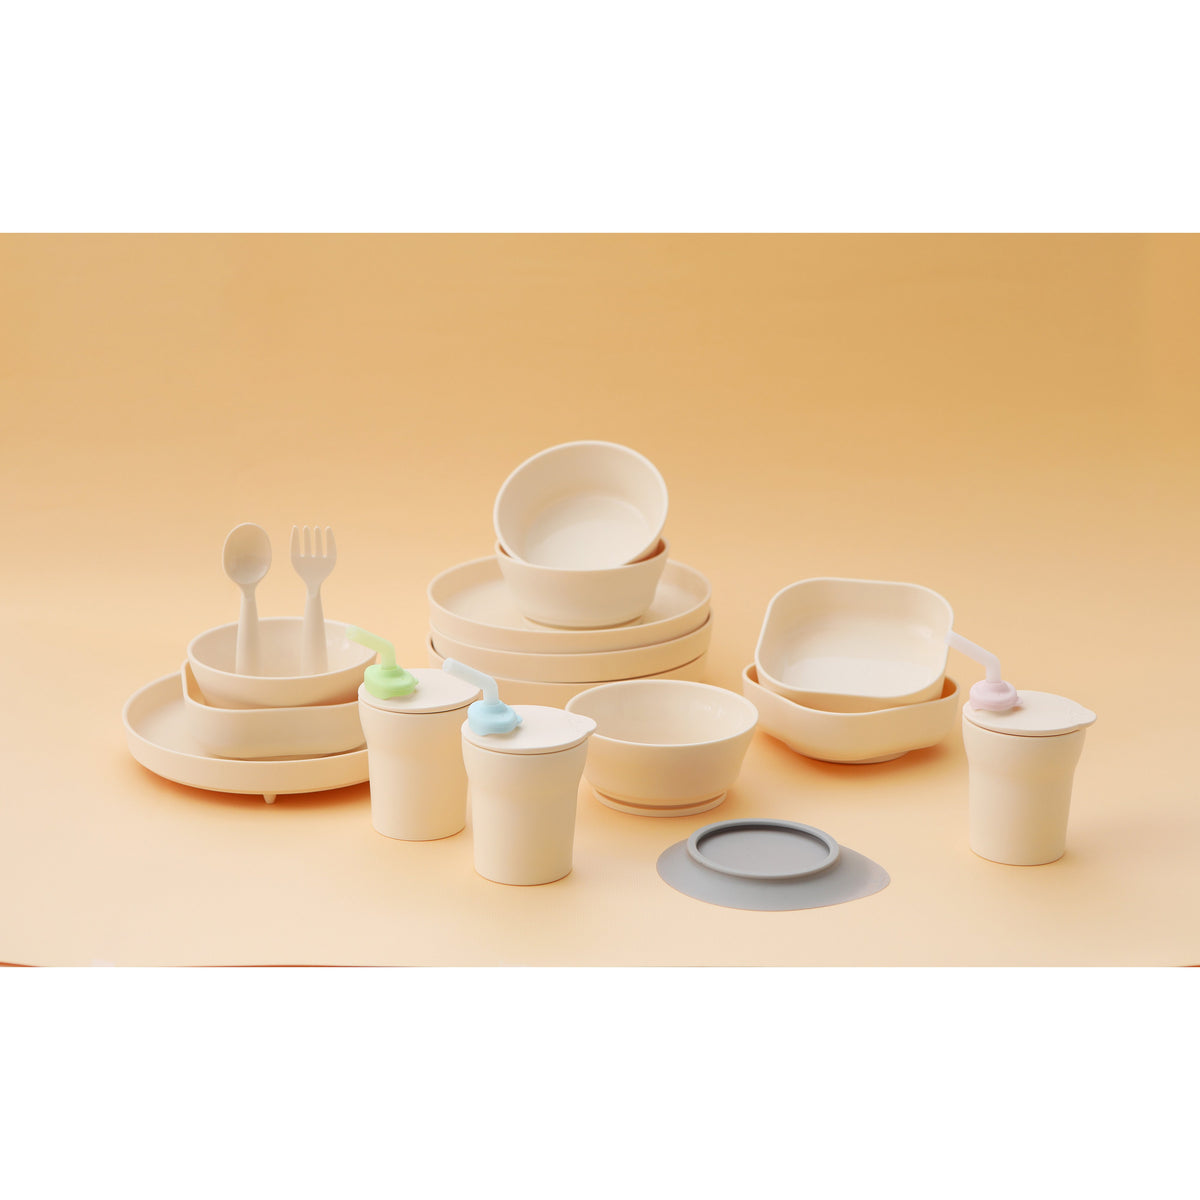 miniware-snack-bowl-set-pla-suction-bowl-vanilla-silicone-cover-in-aqua- (12)